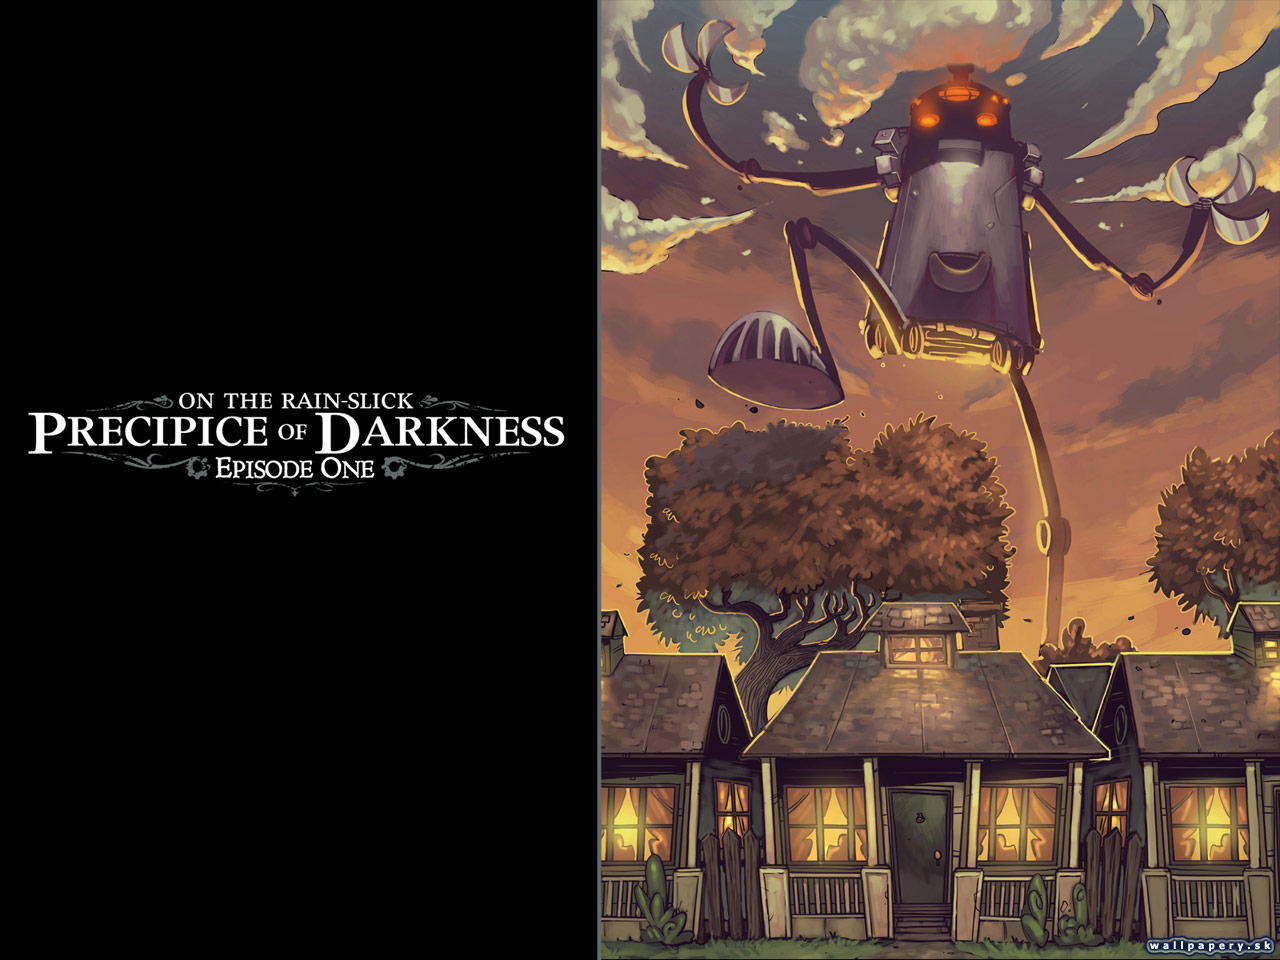 On The Rain-Slick: Precipice of Darkness - Episode One - wallpaper 6